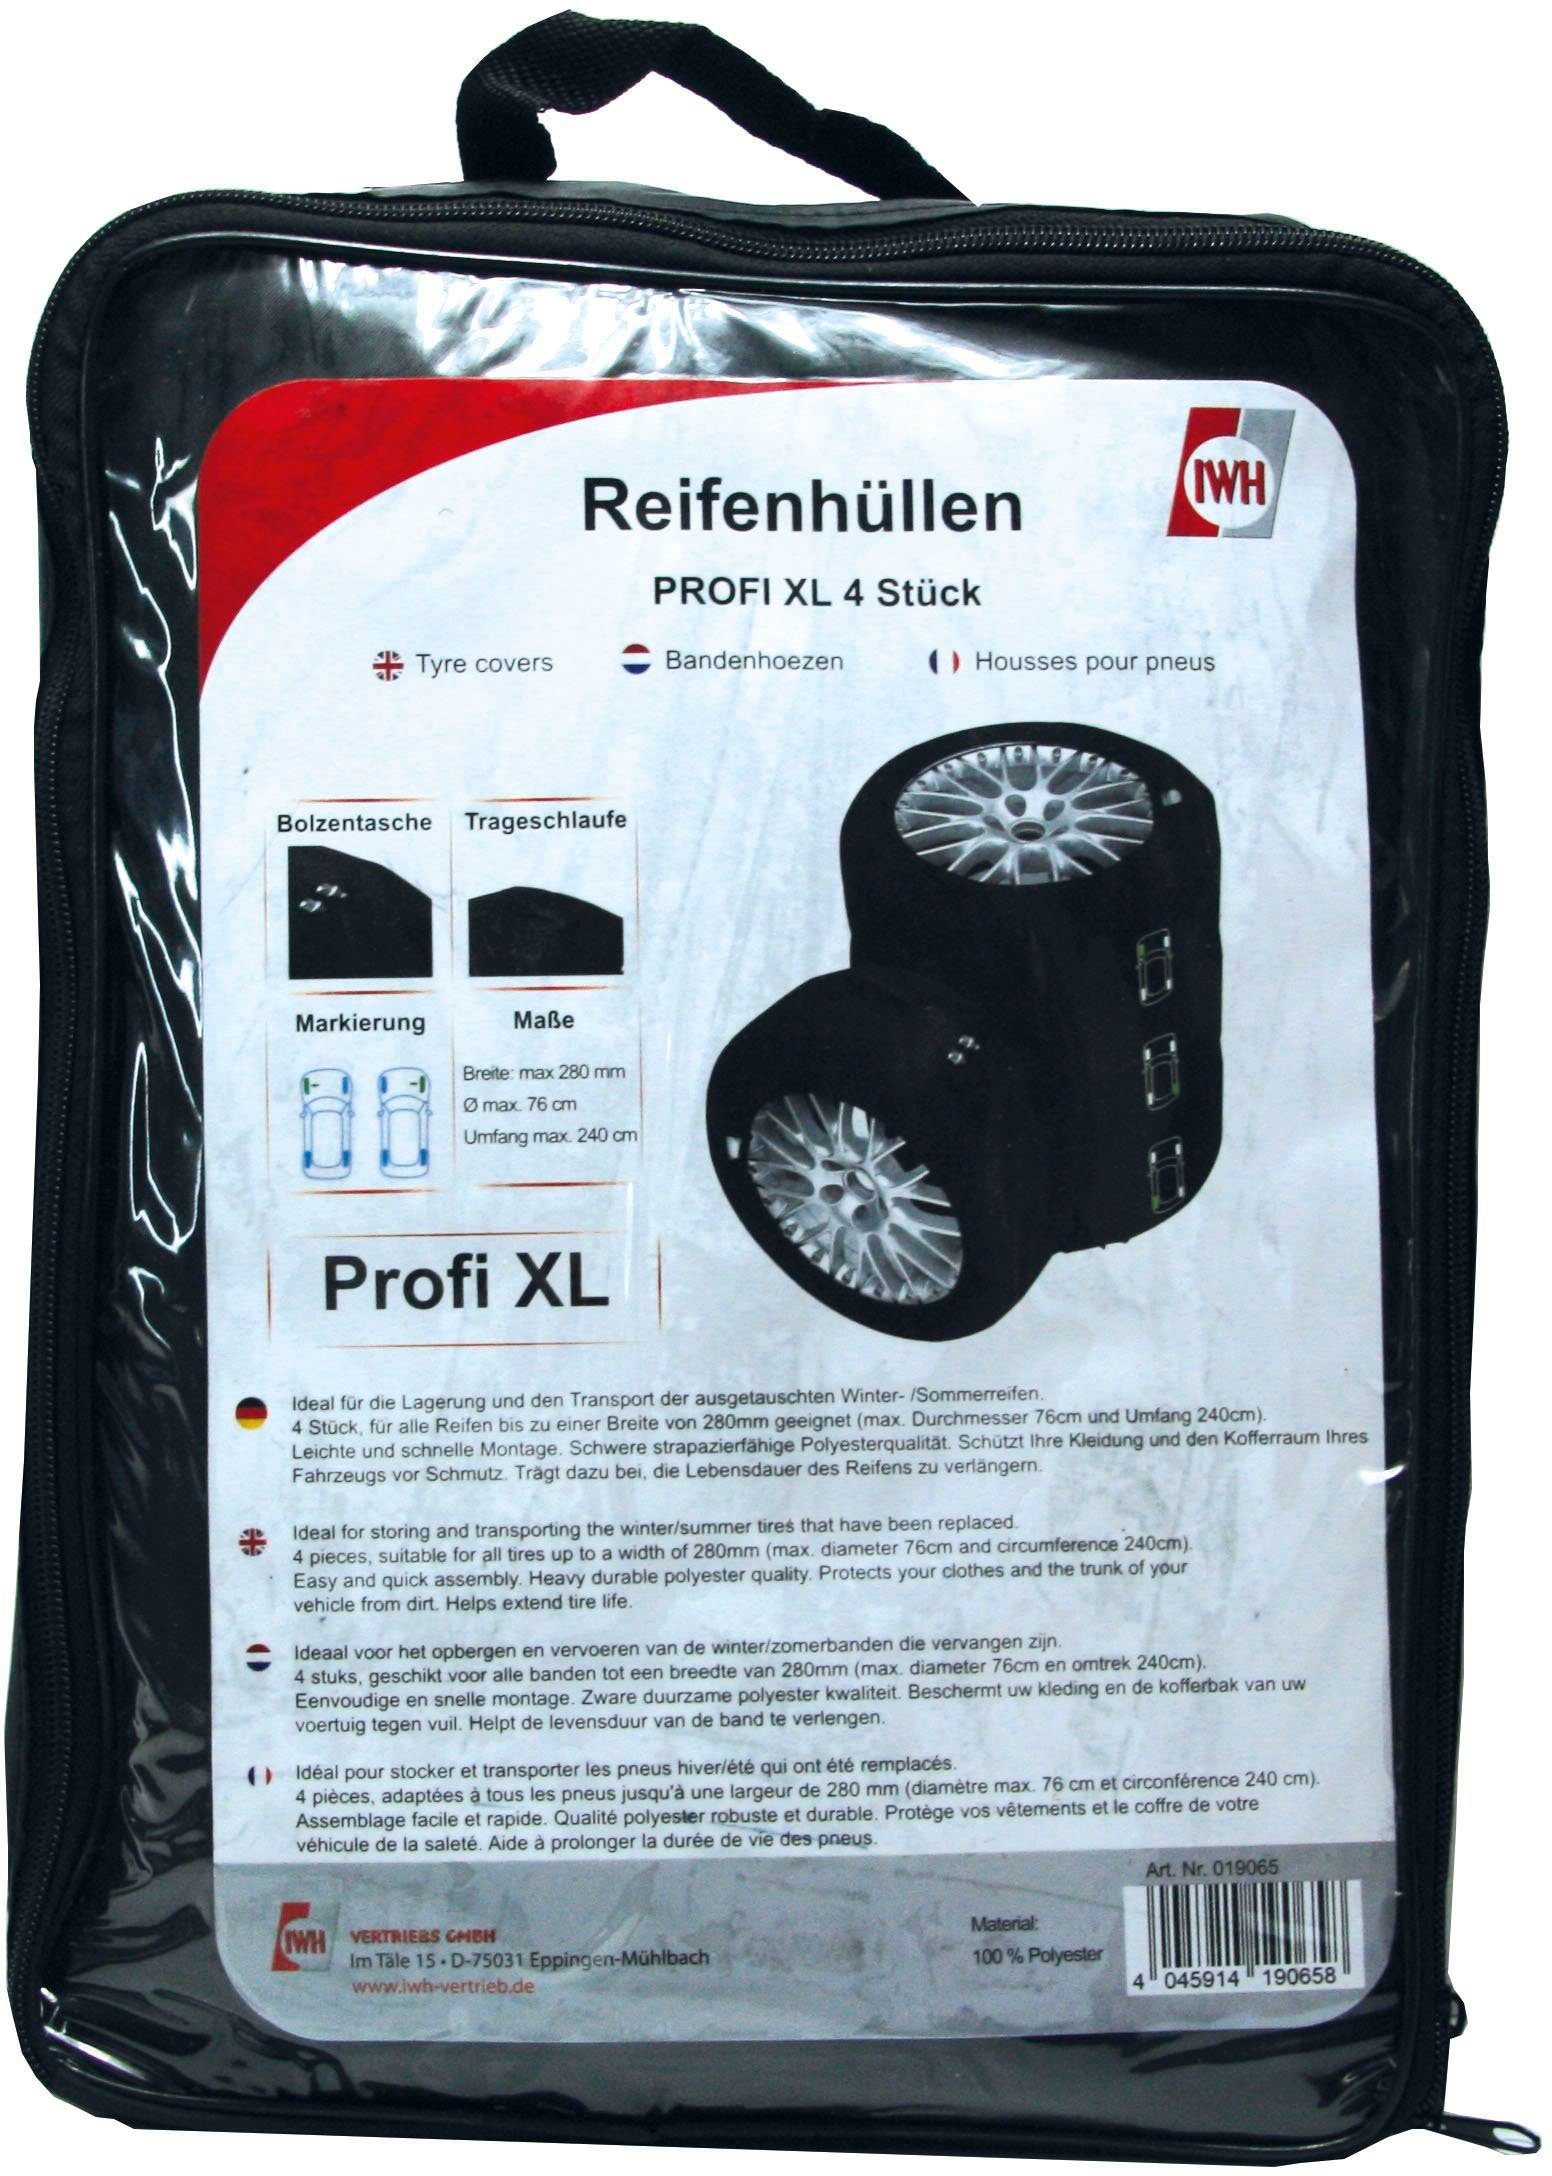 IWH Reifentasche Reifenhüllen Profi XL (Set), 4 Stk., Schwere  strapazierfähige Polyesterqualität